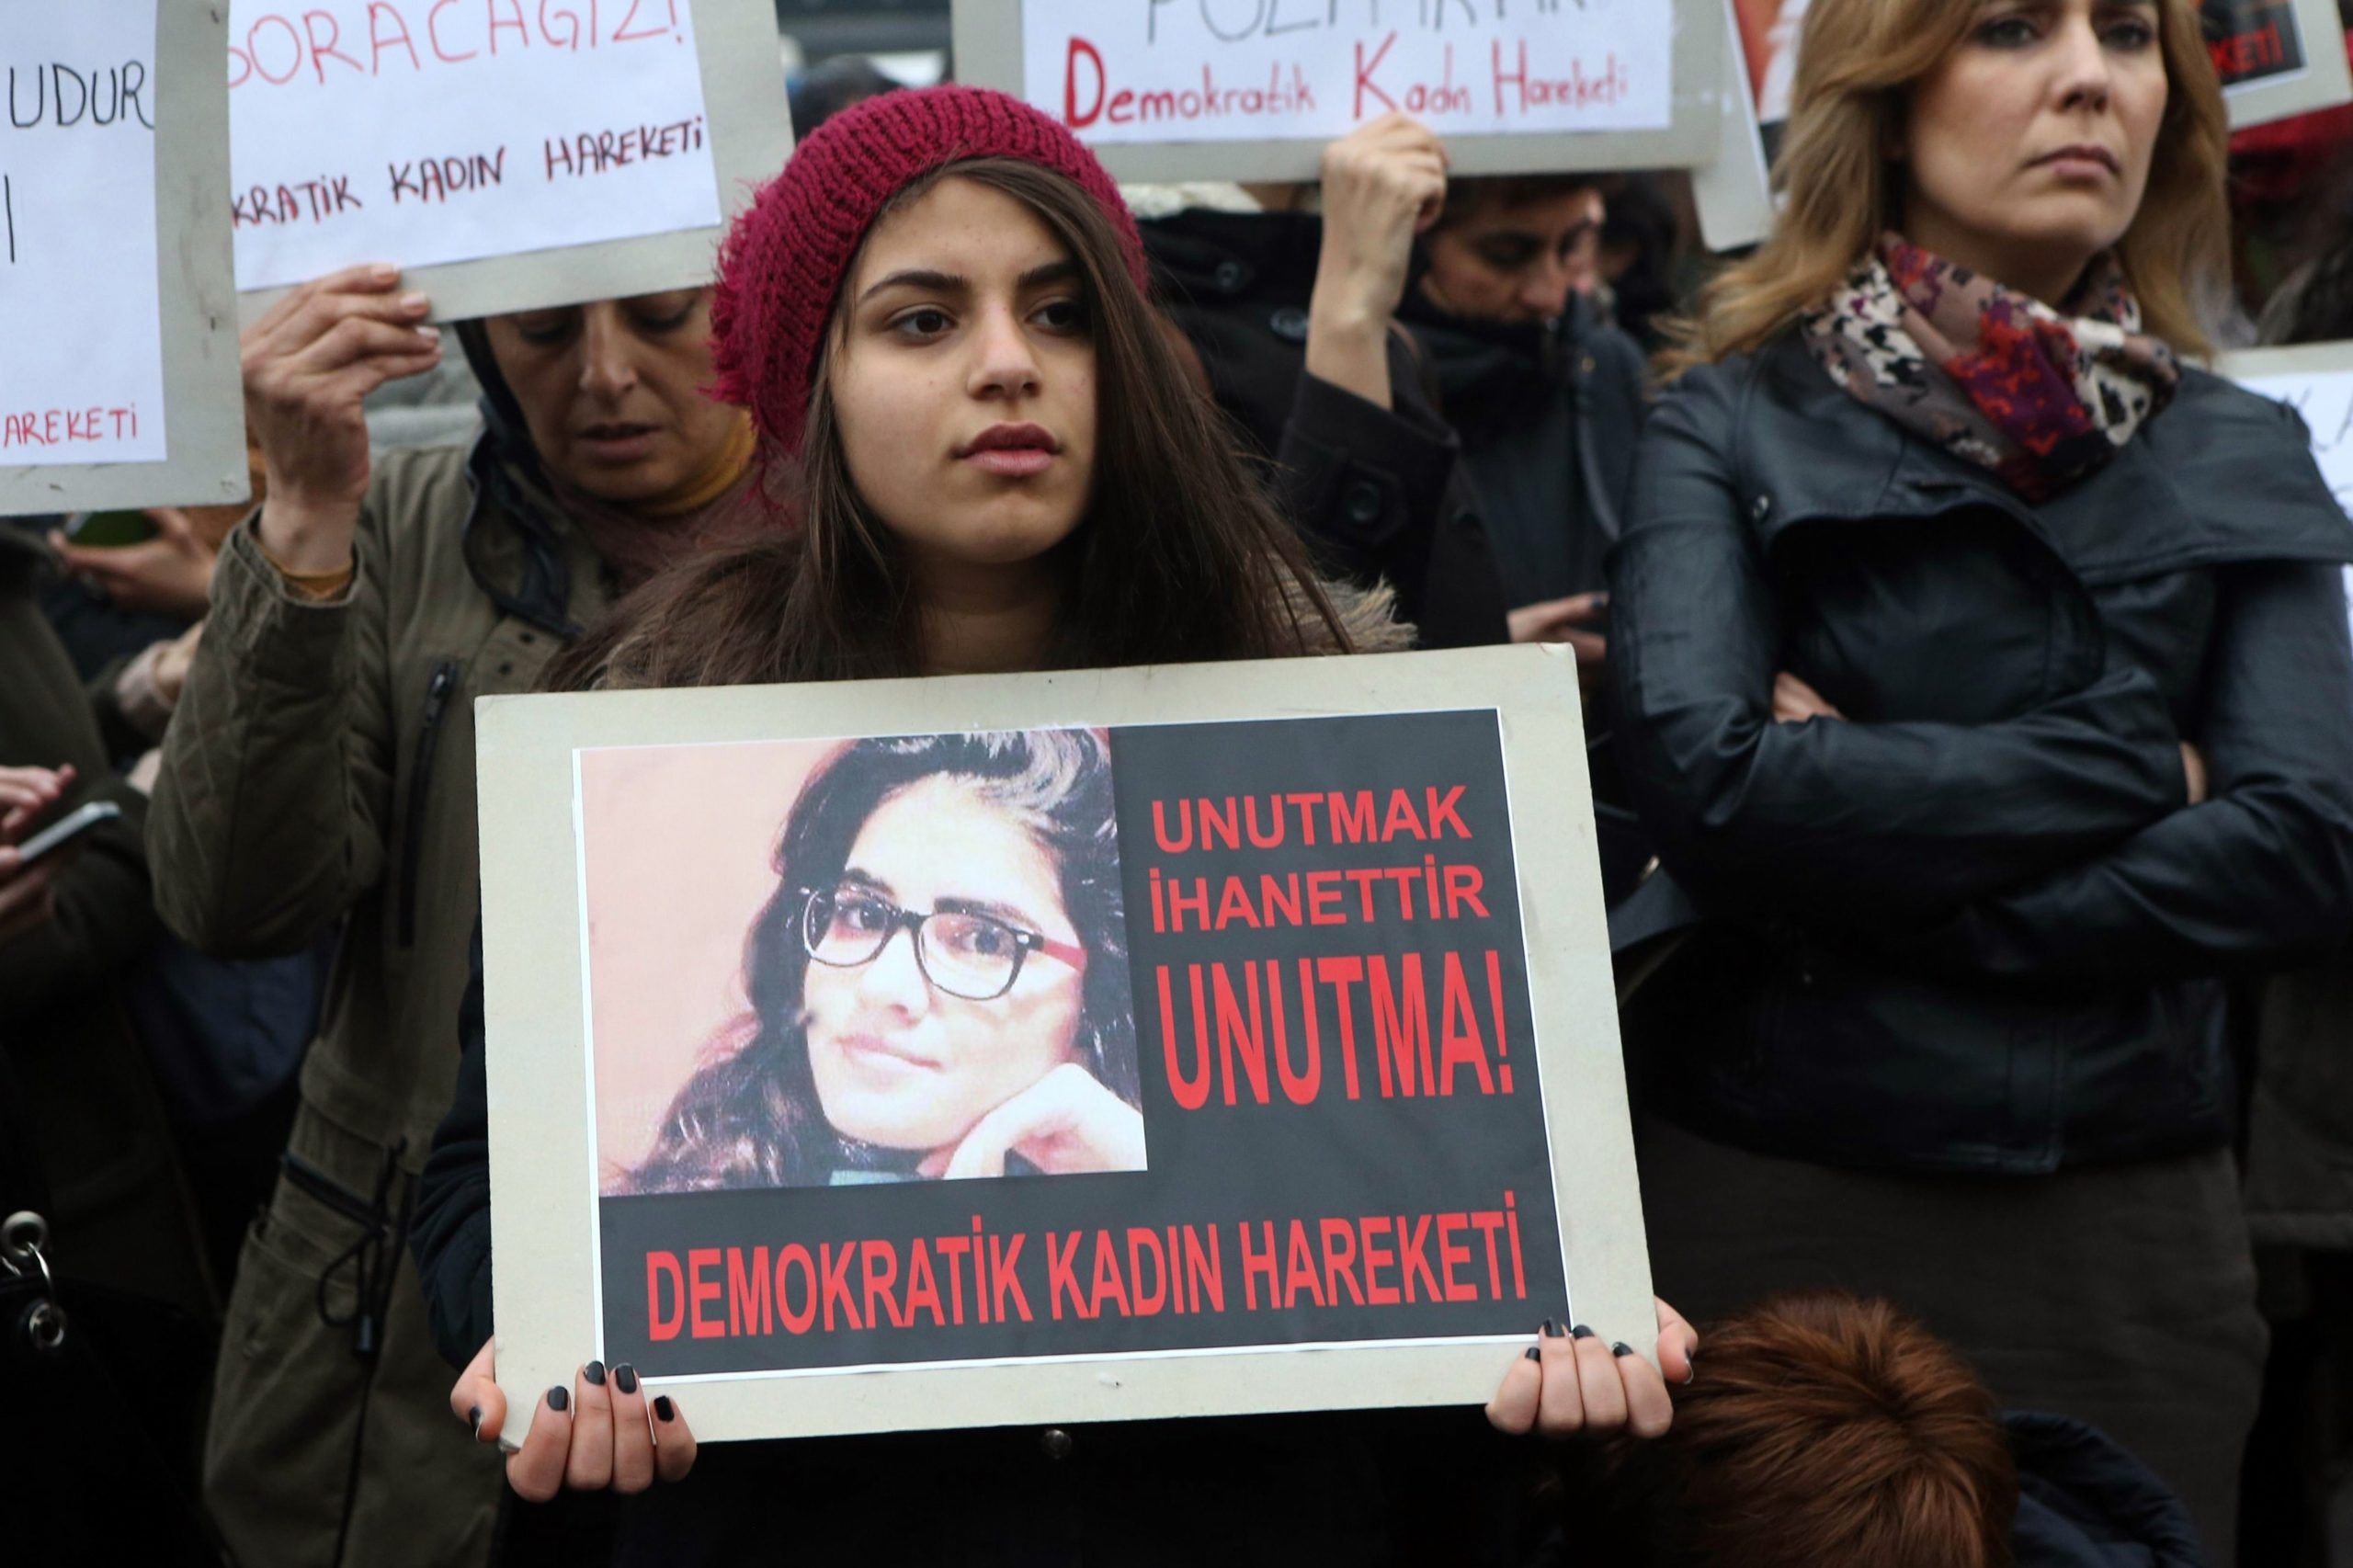 Στο ακροατήριο η υπόθεση της δολοφονίας που συγκλόνισε την Τουρκία